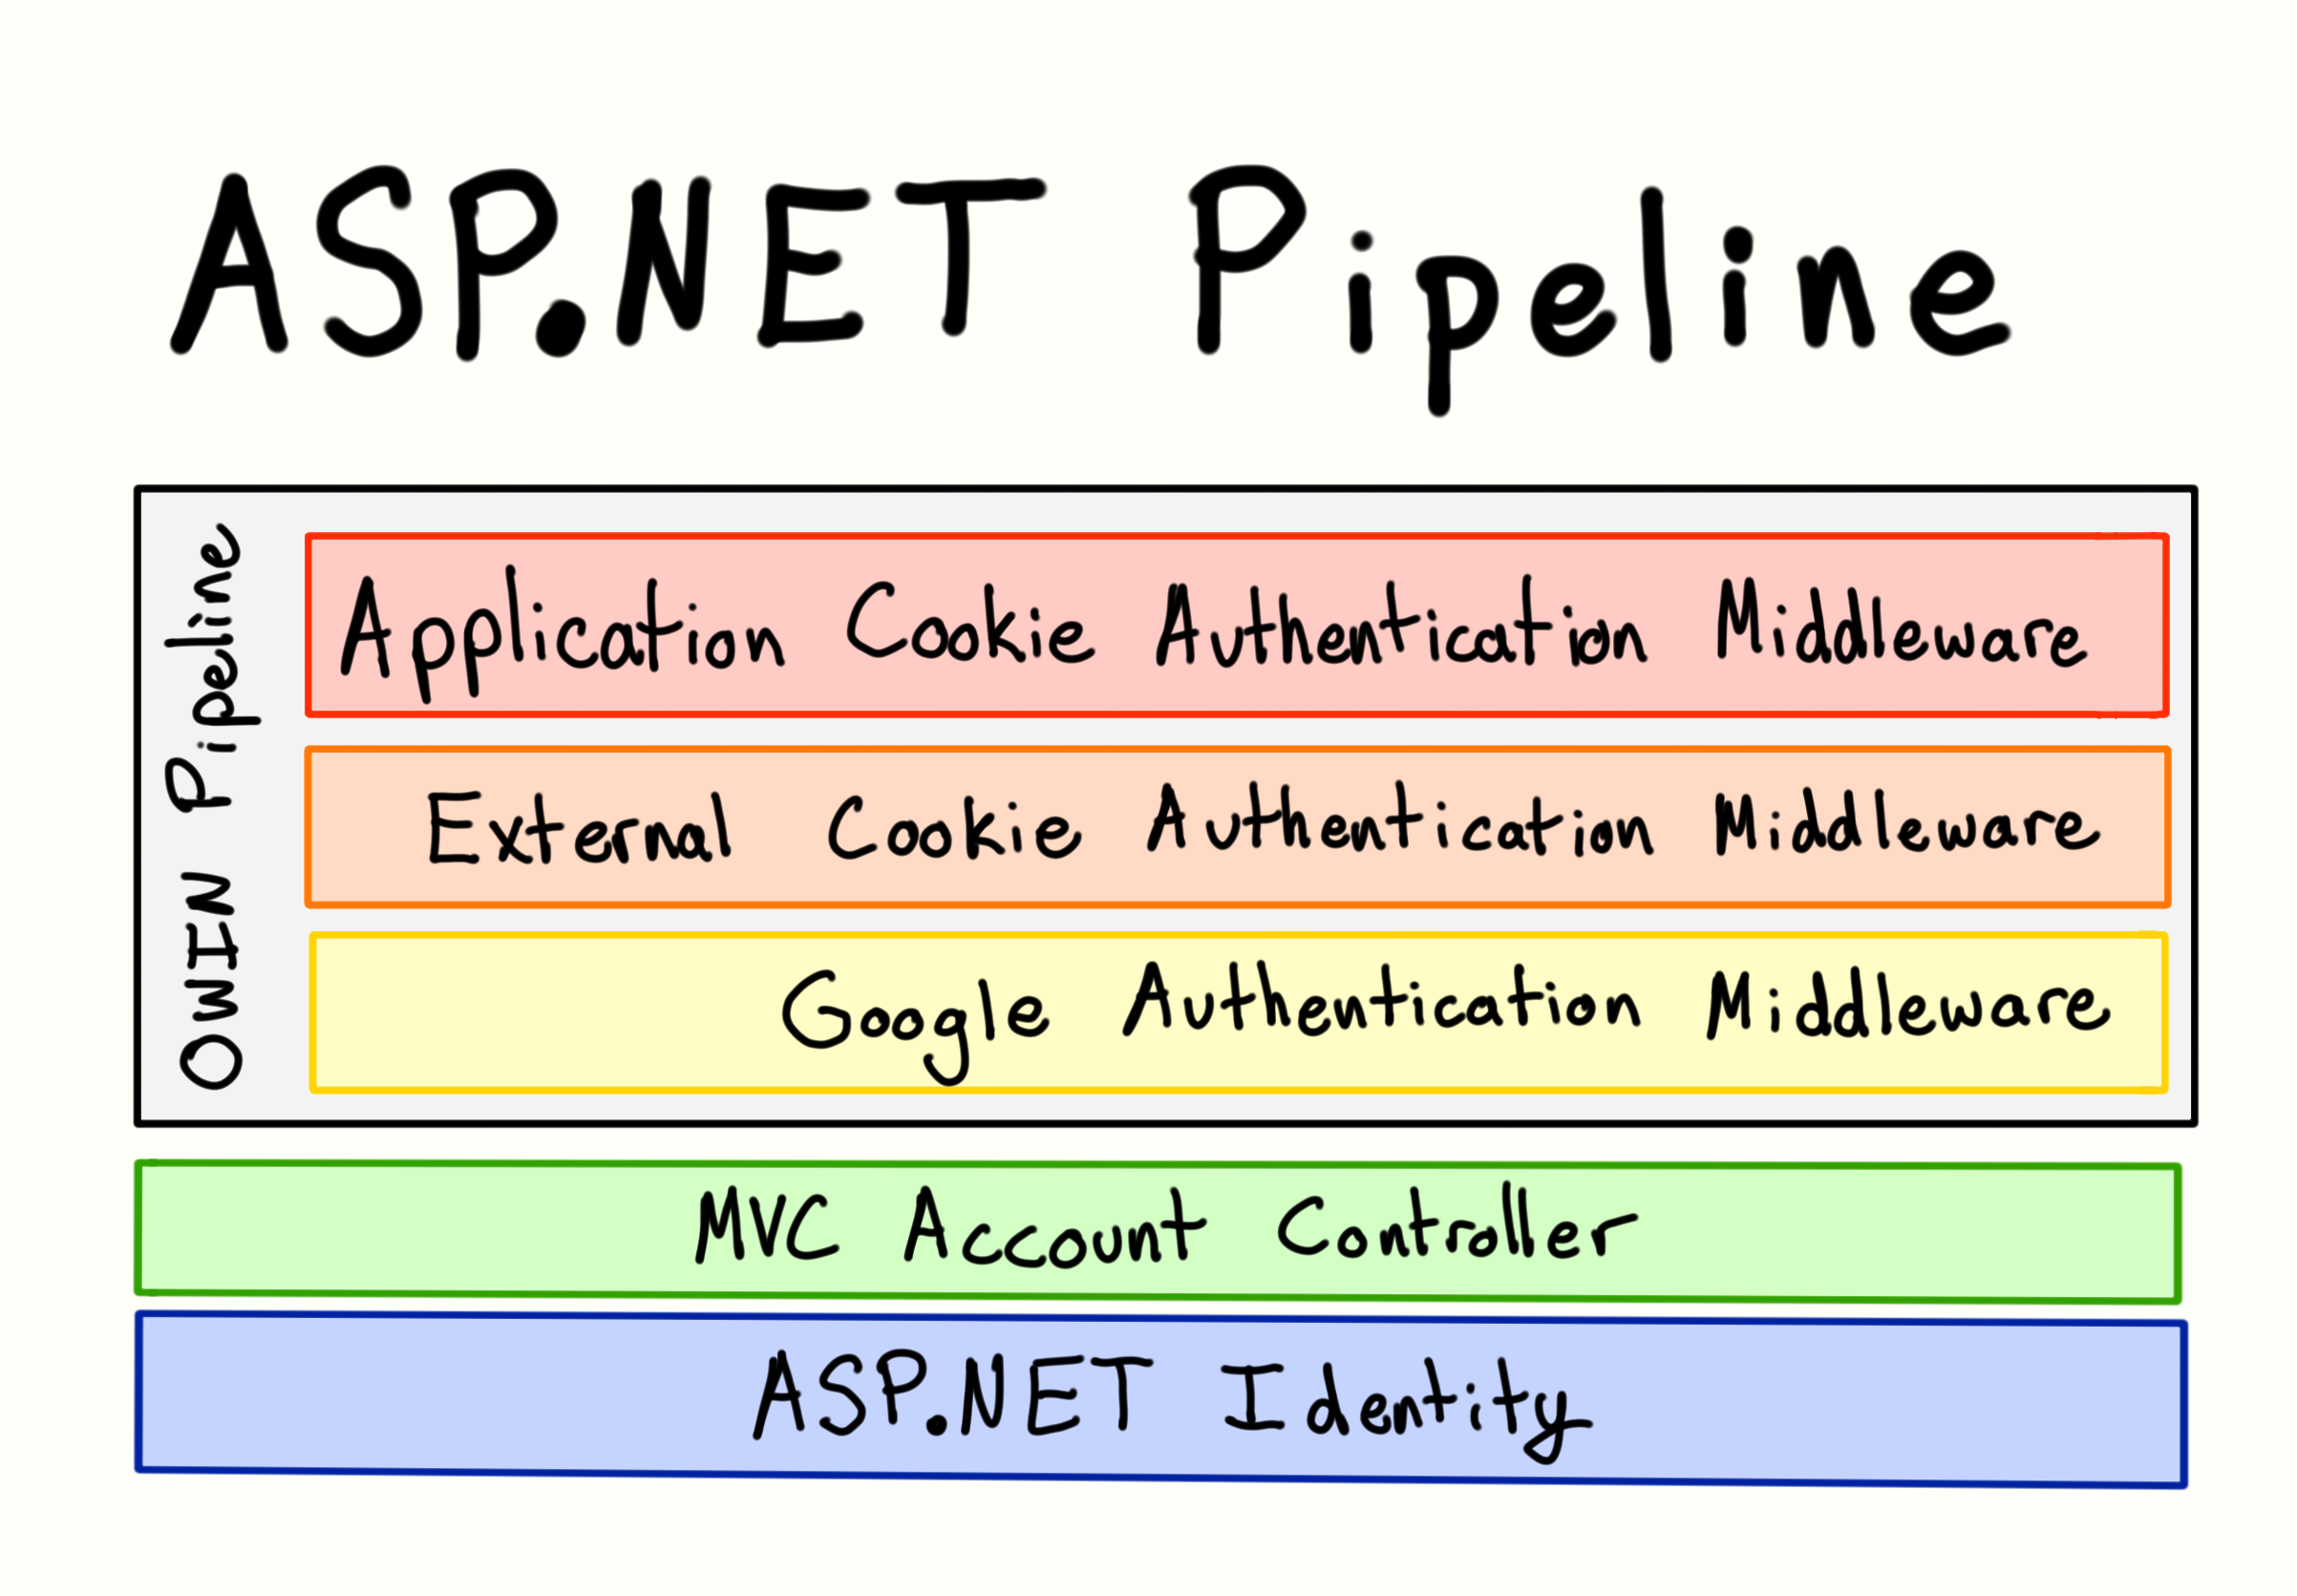 ASP.NET Pipeline